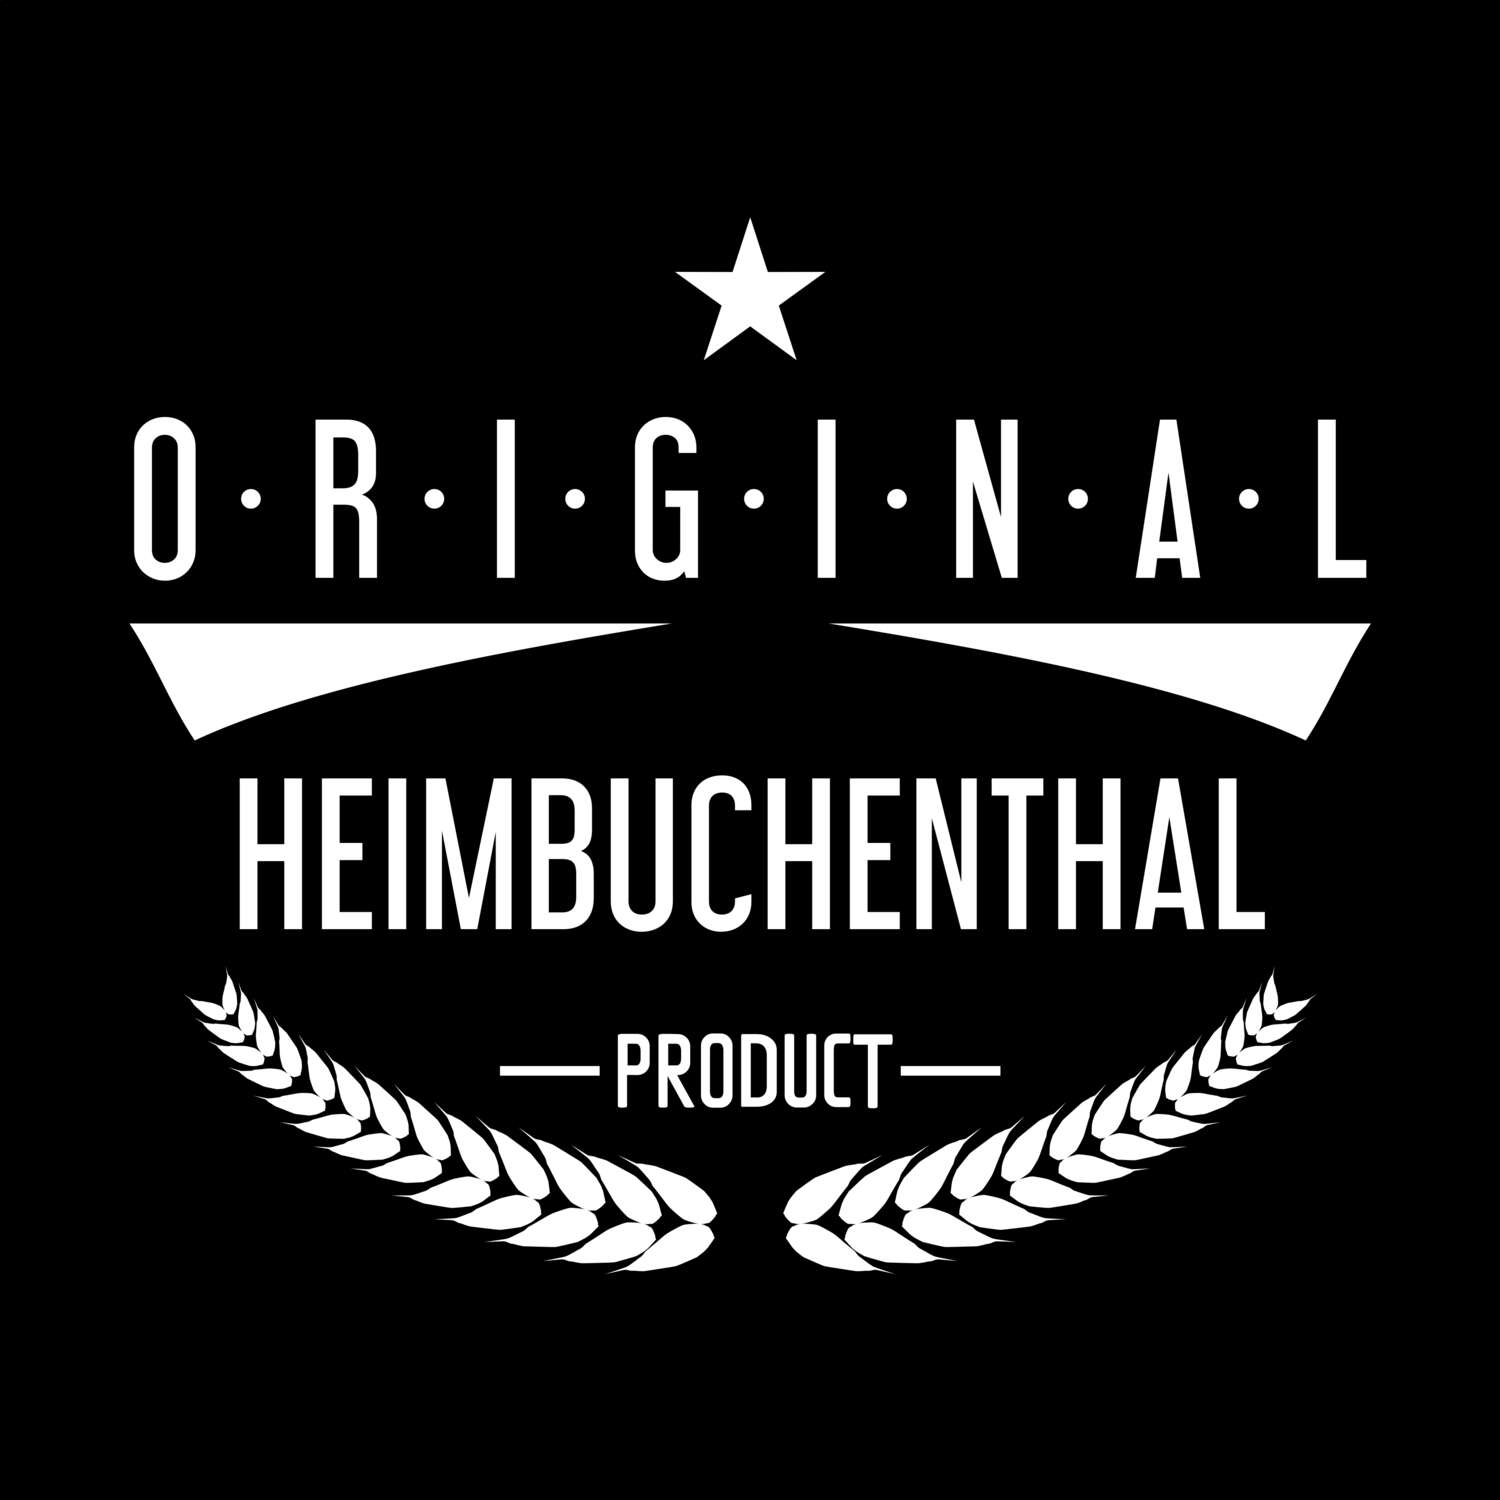 Heimbuchenthal T-Shirt »Original Product«